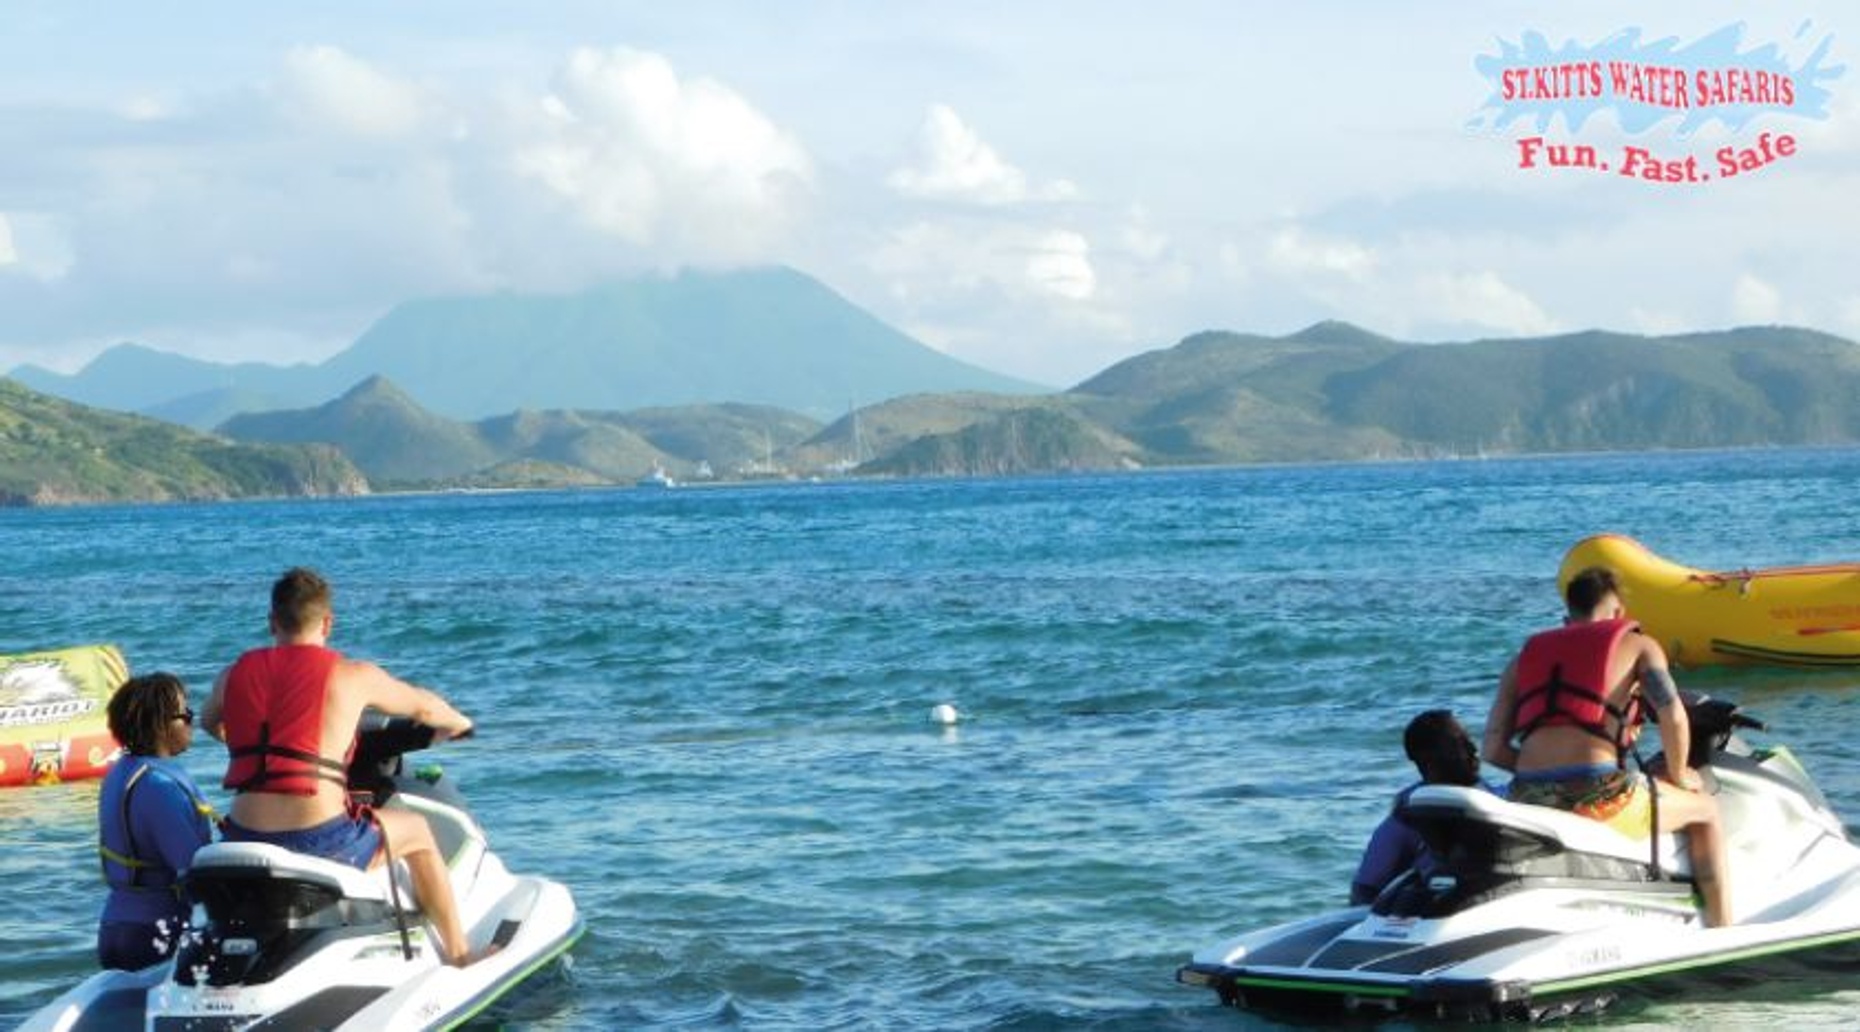 St. Kitts Jet Ski Snorkel Tour